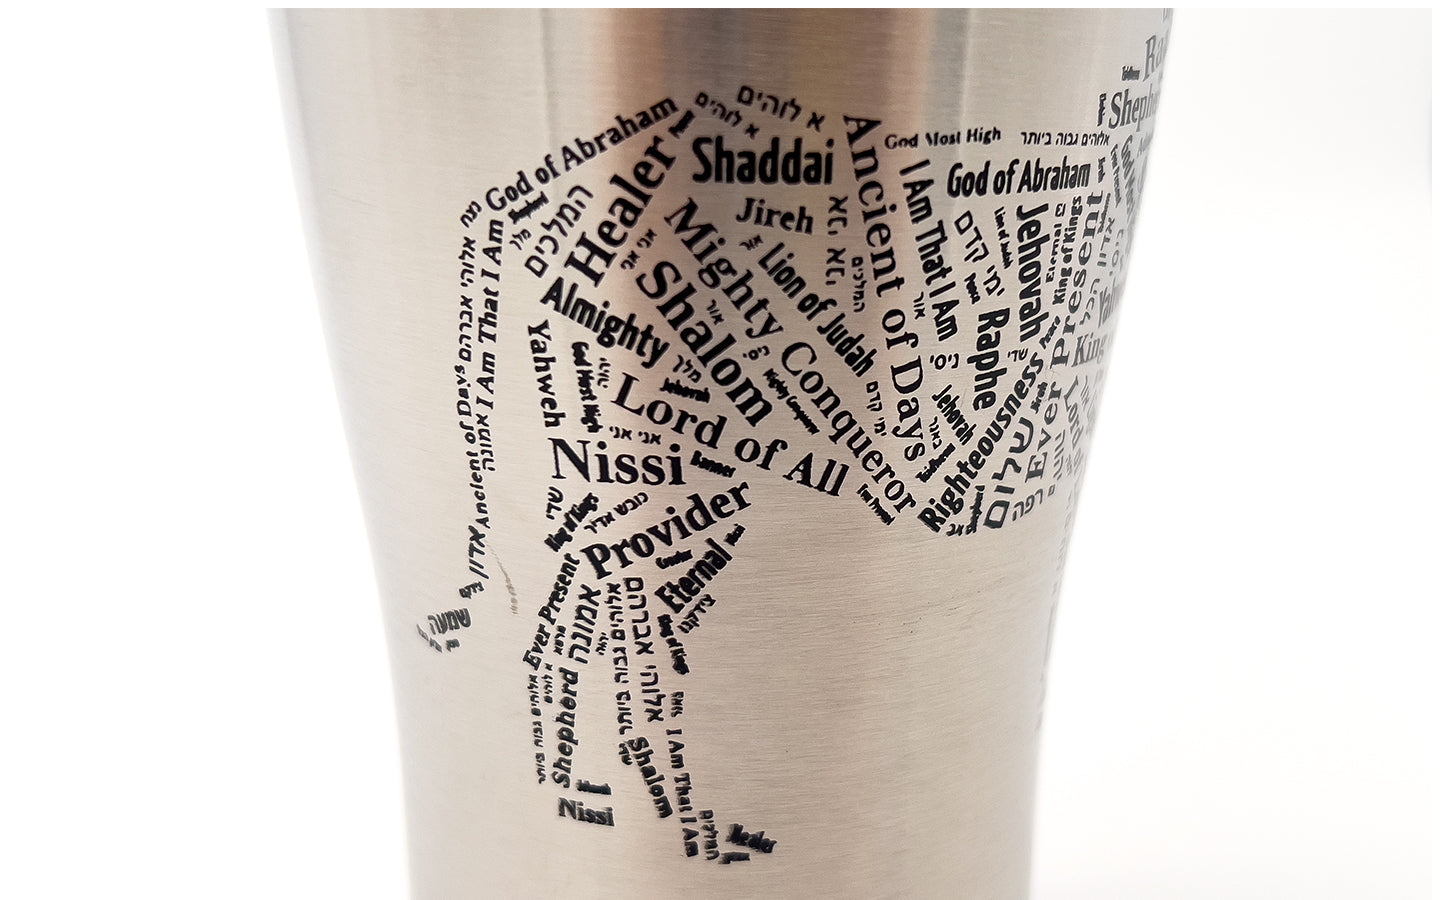 Names of God/Lion of Judah Traveler's Mug